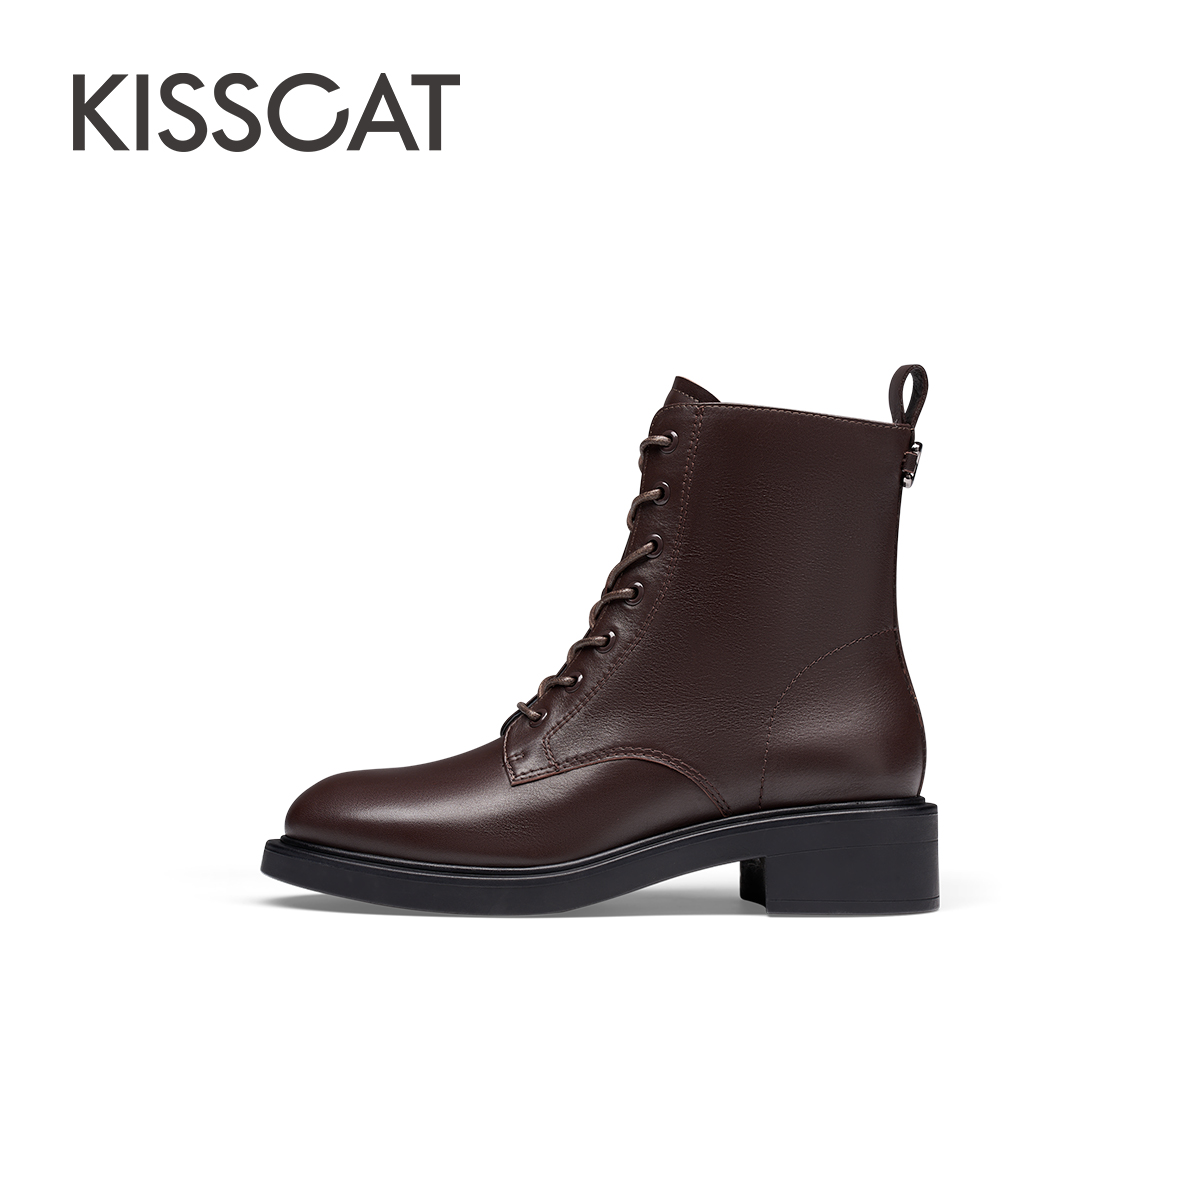 KISSCAT 接吻猫 2023年秋季新款休闲系带短靴时尚增高气质马丁靴女 654.96元